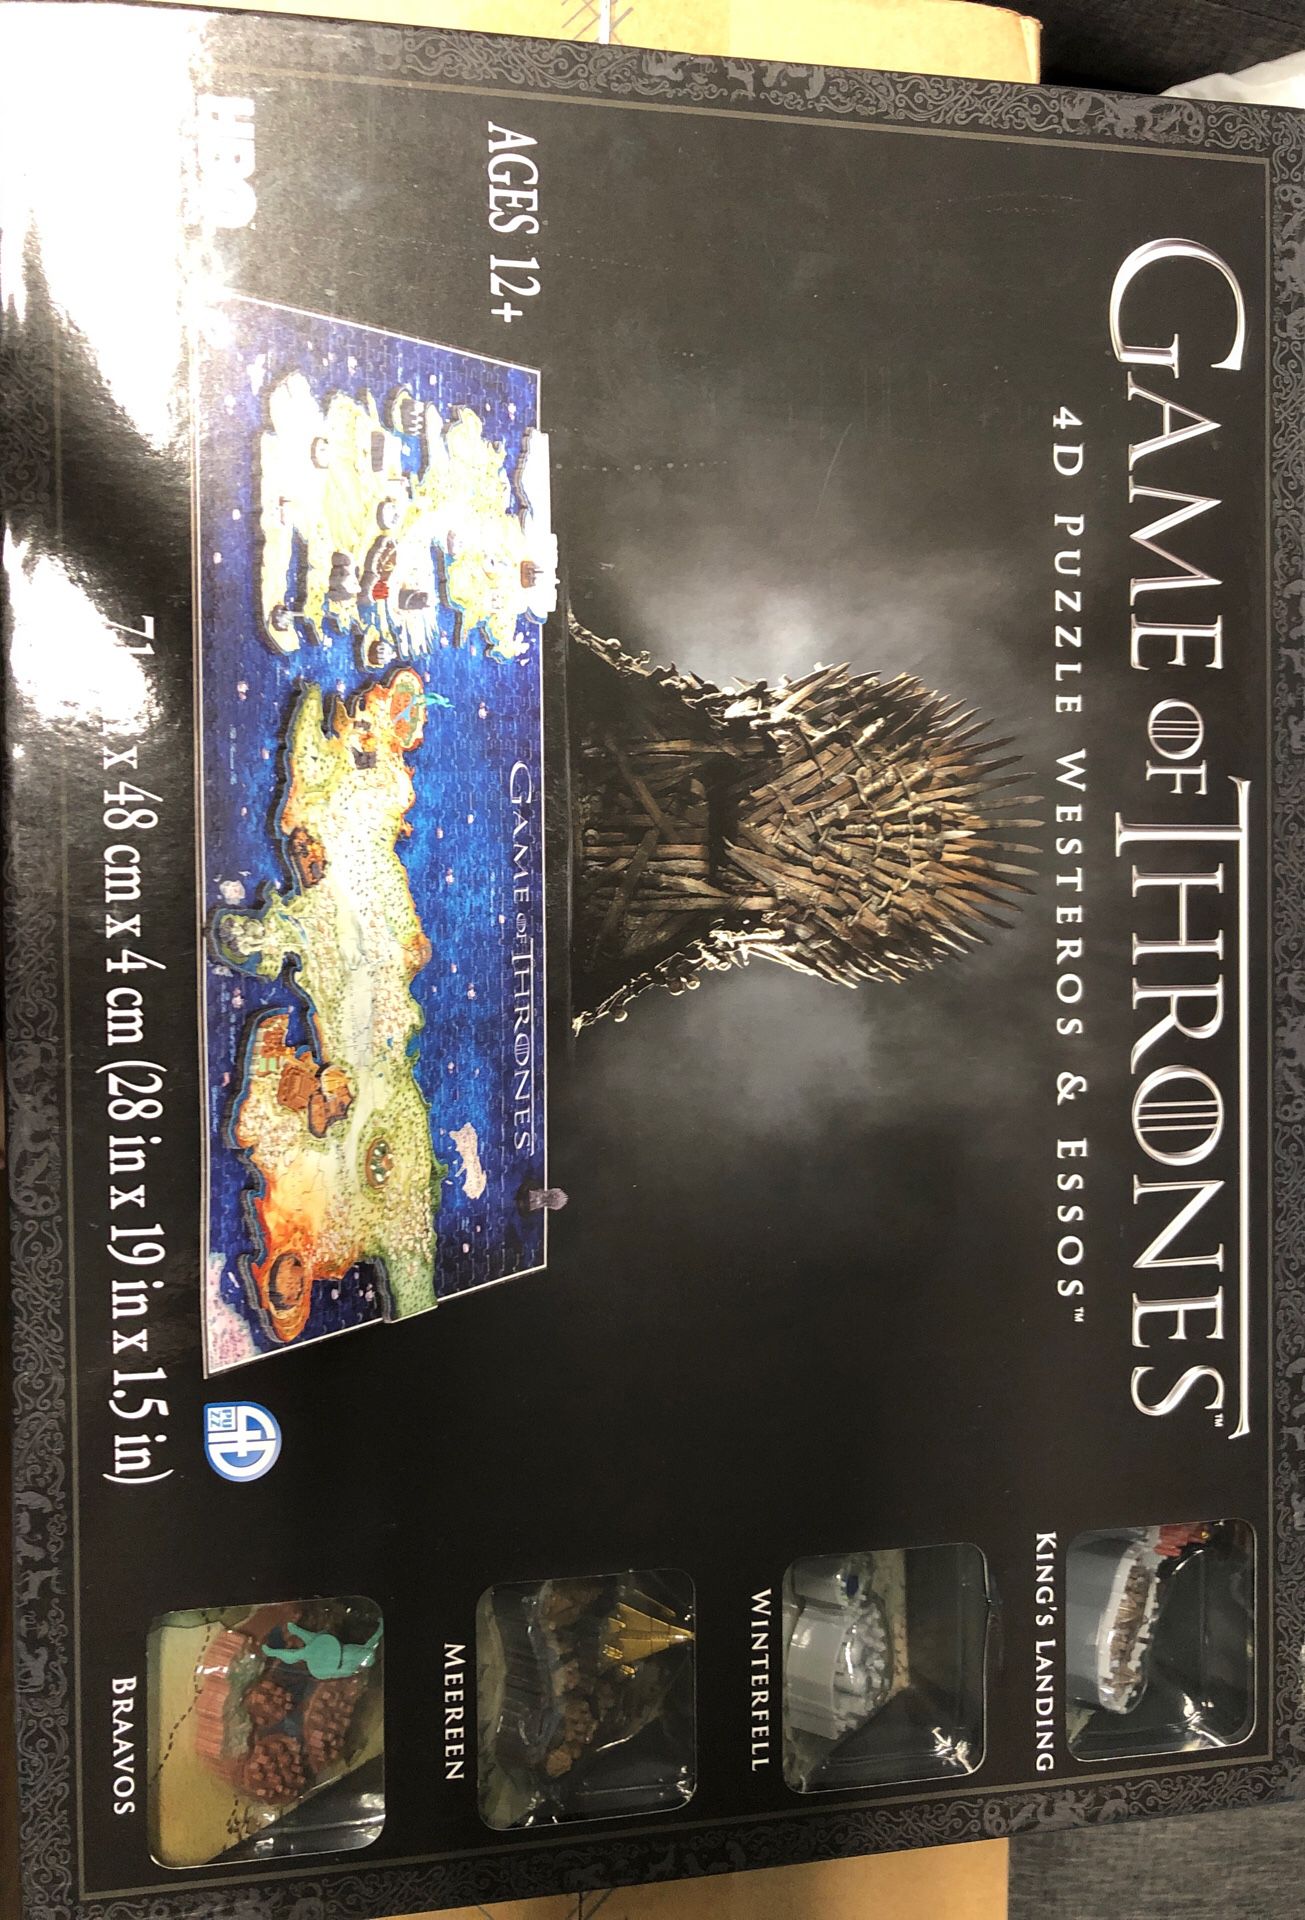 Game of thrones 4d puzzle of Westeros essos